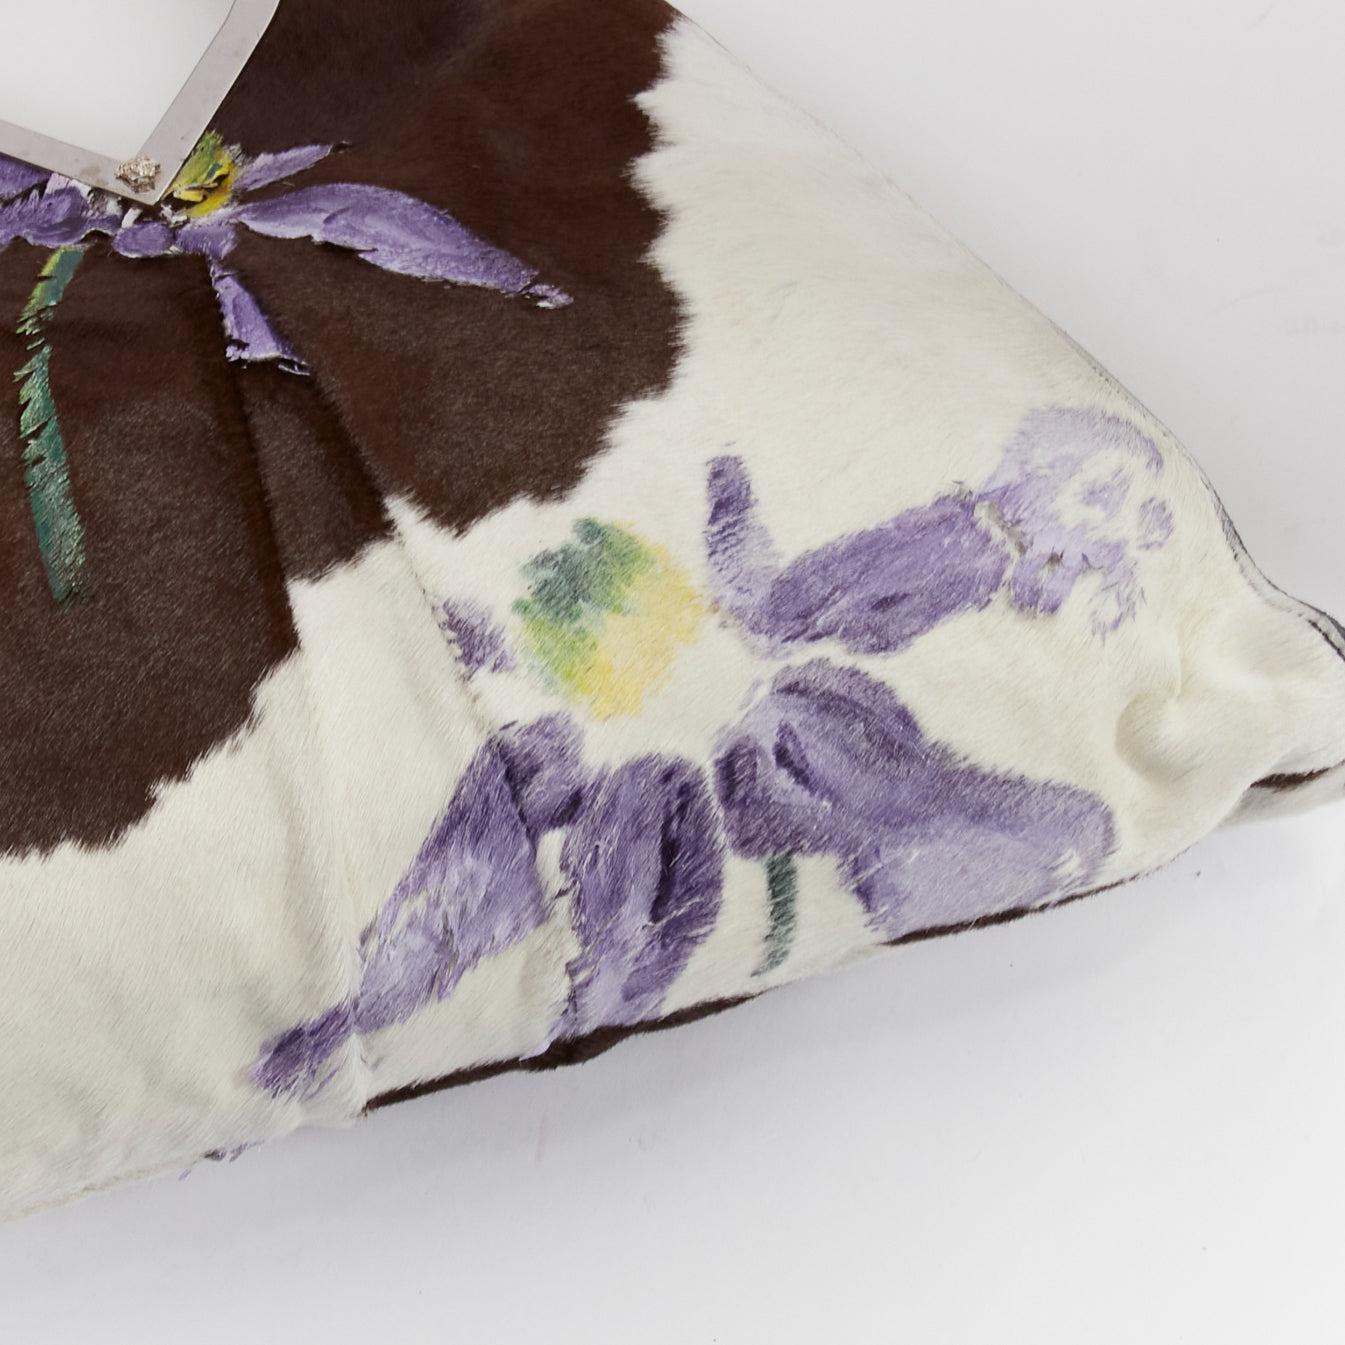 GIANNI VERSACE 1999 Runway handpainted floral brown cow print horsehair bag For Sale 3